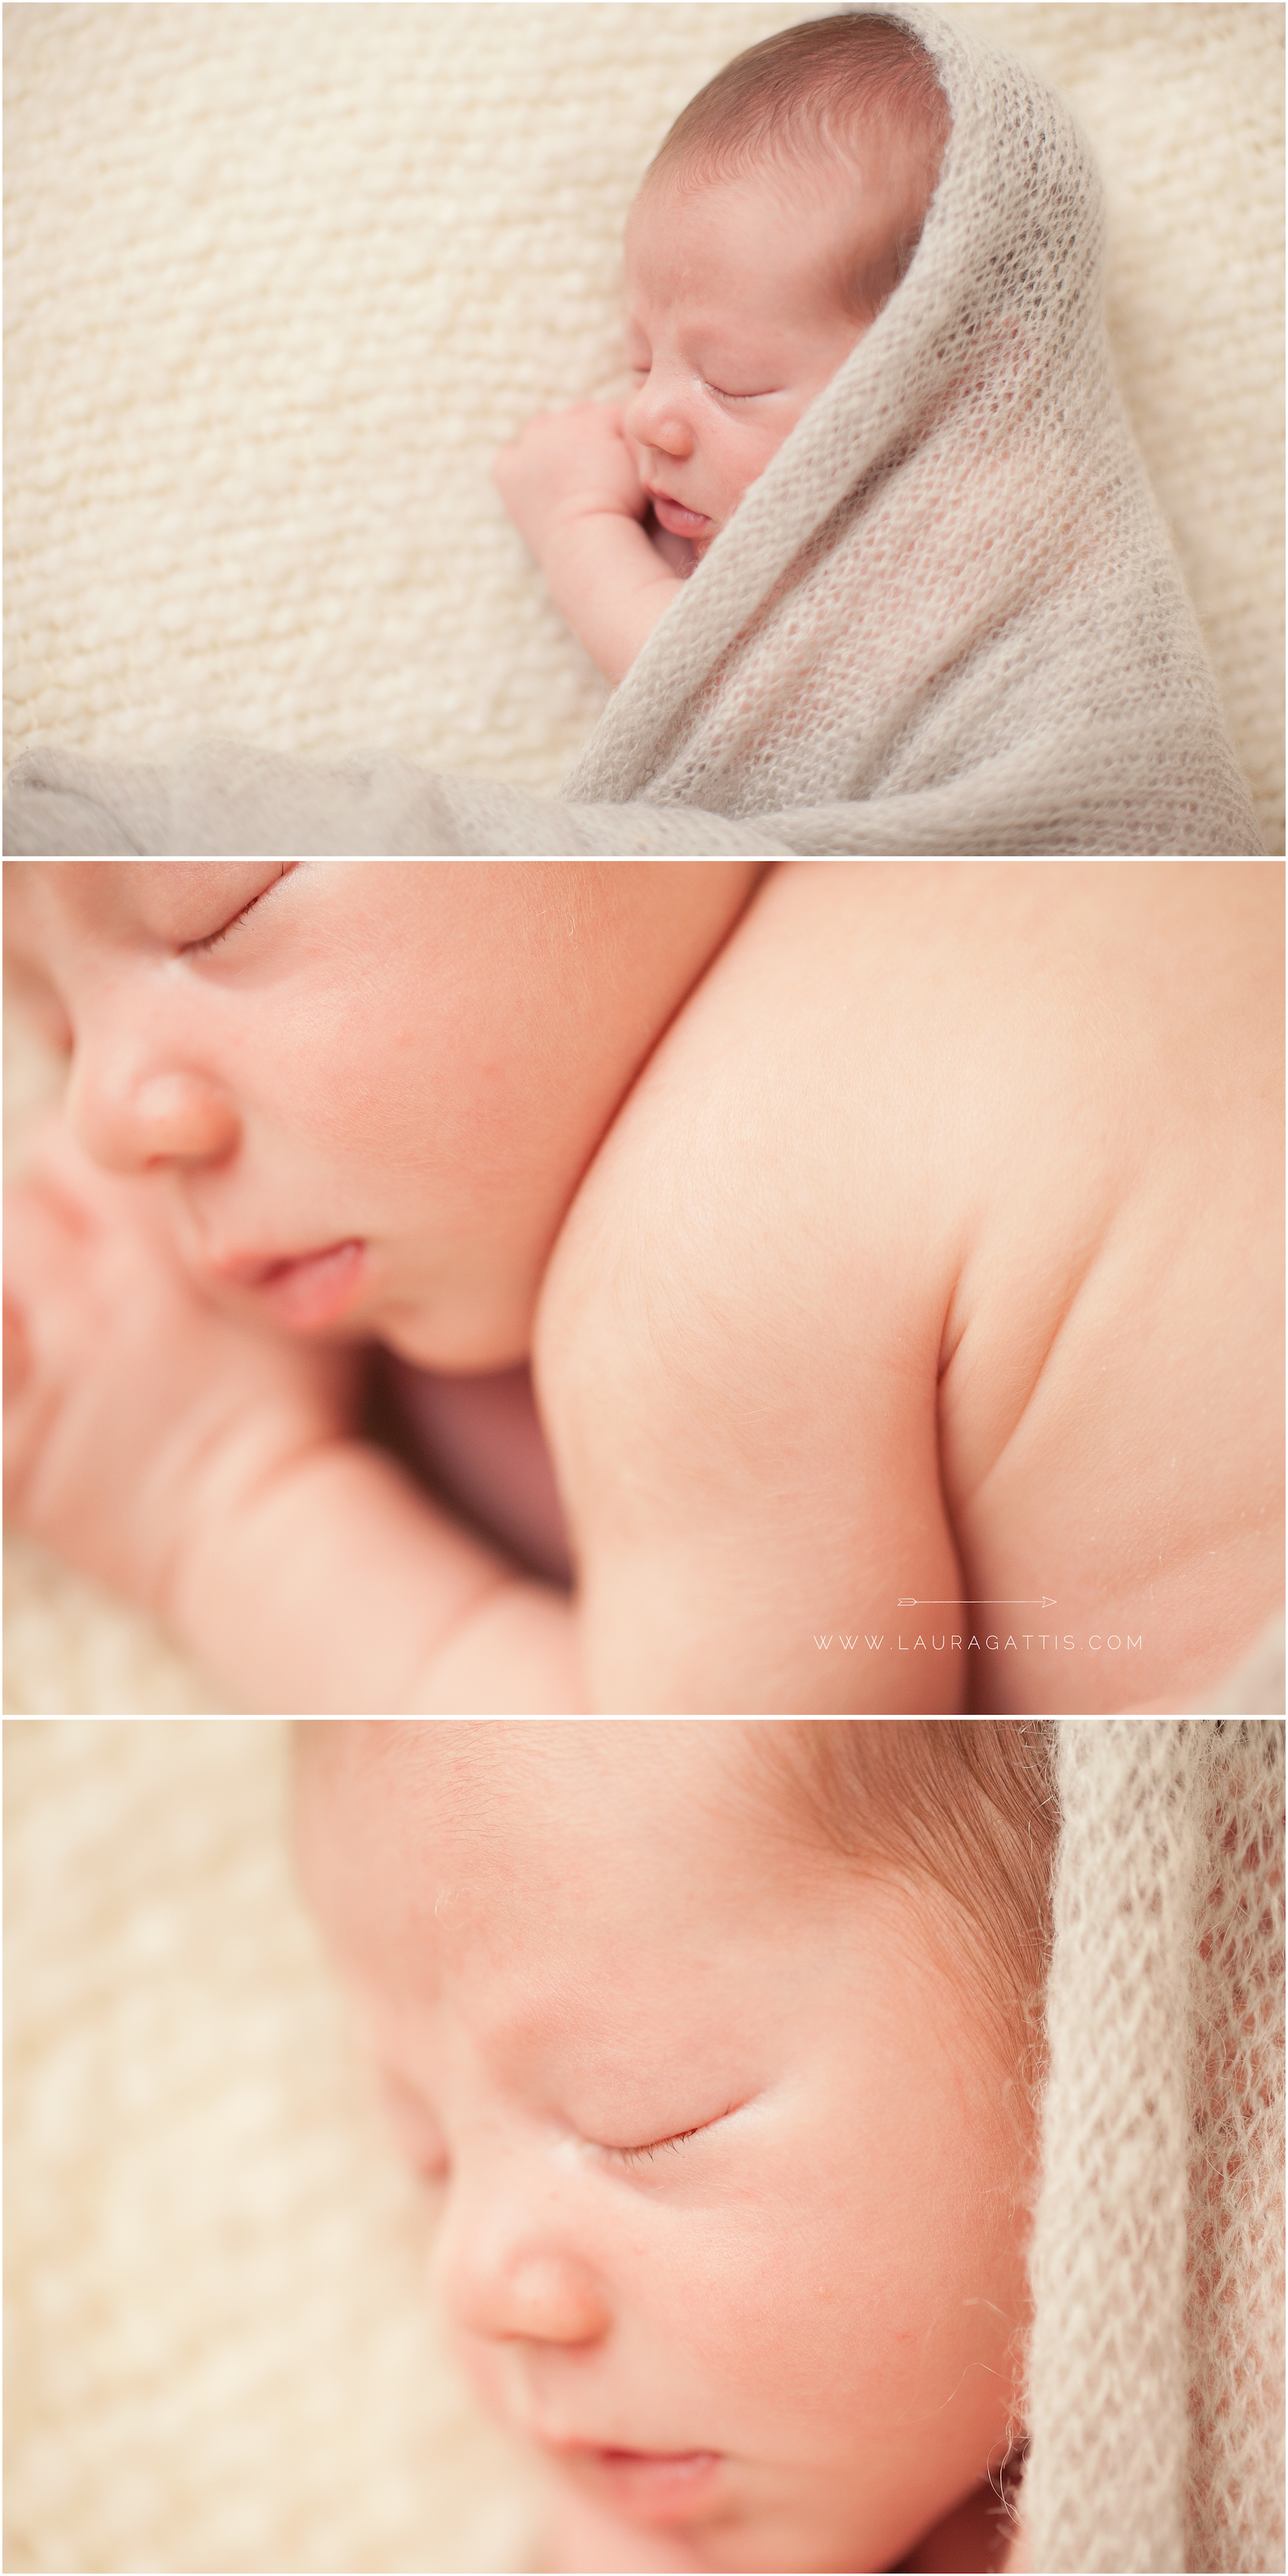 newborn details | laura gattis photography | www.lauragattis.com